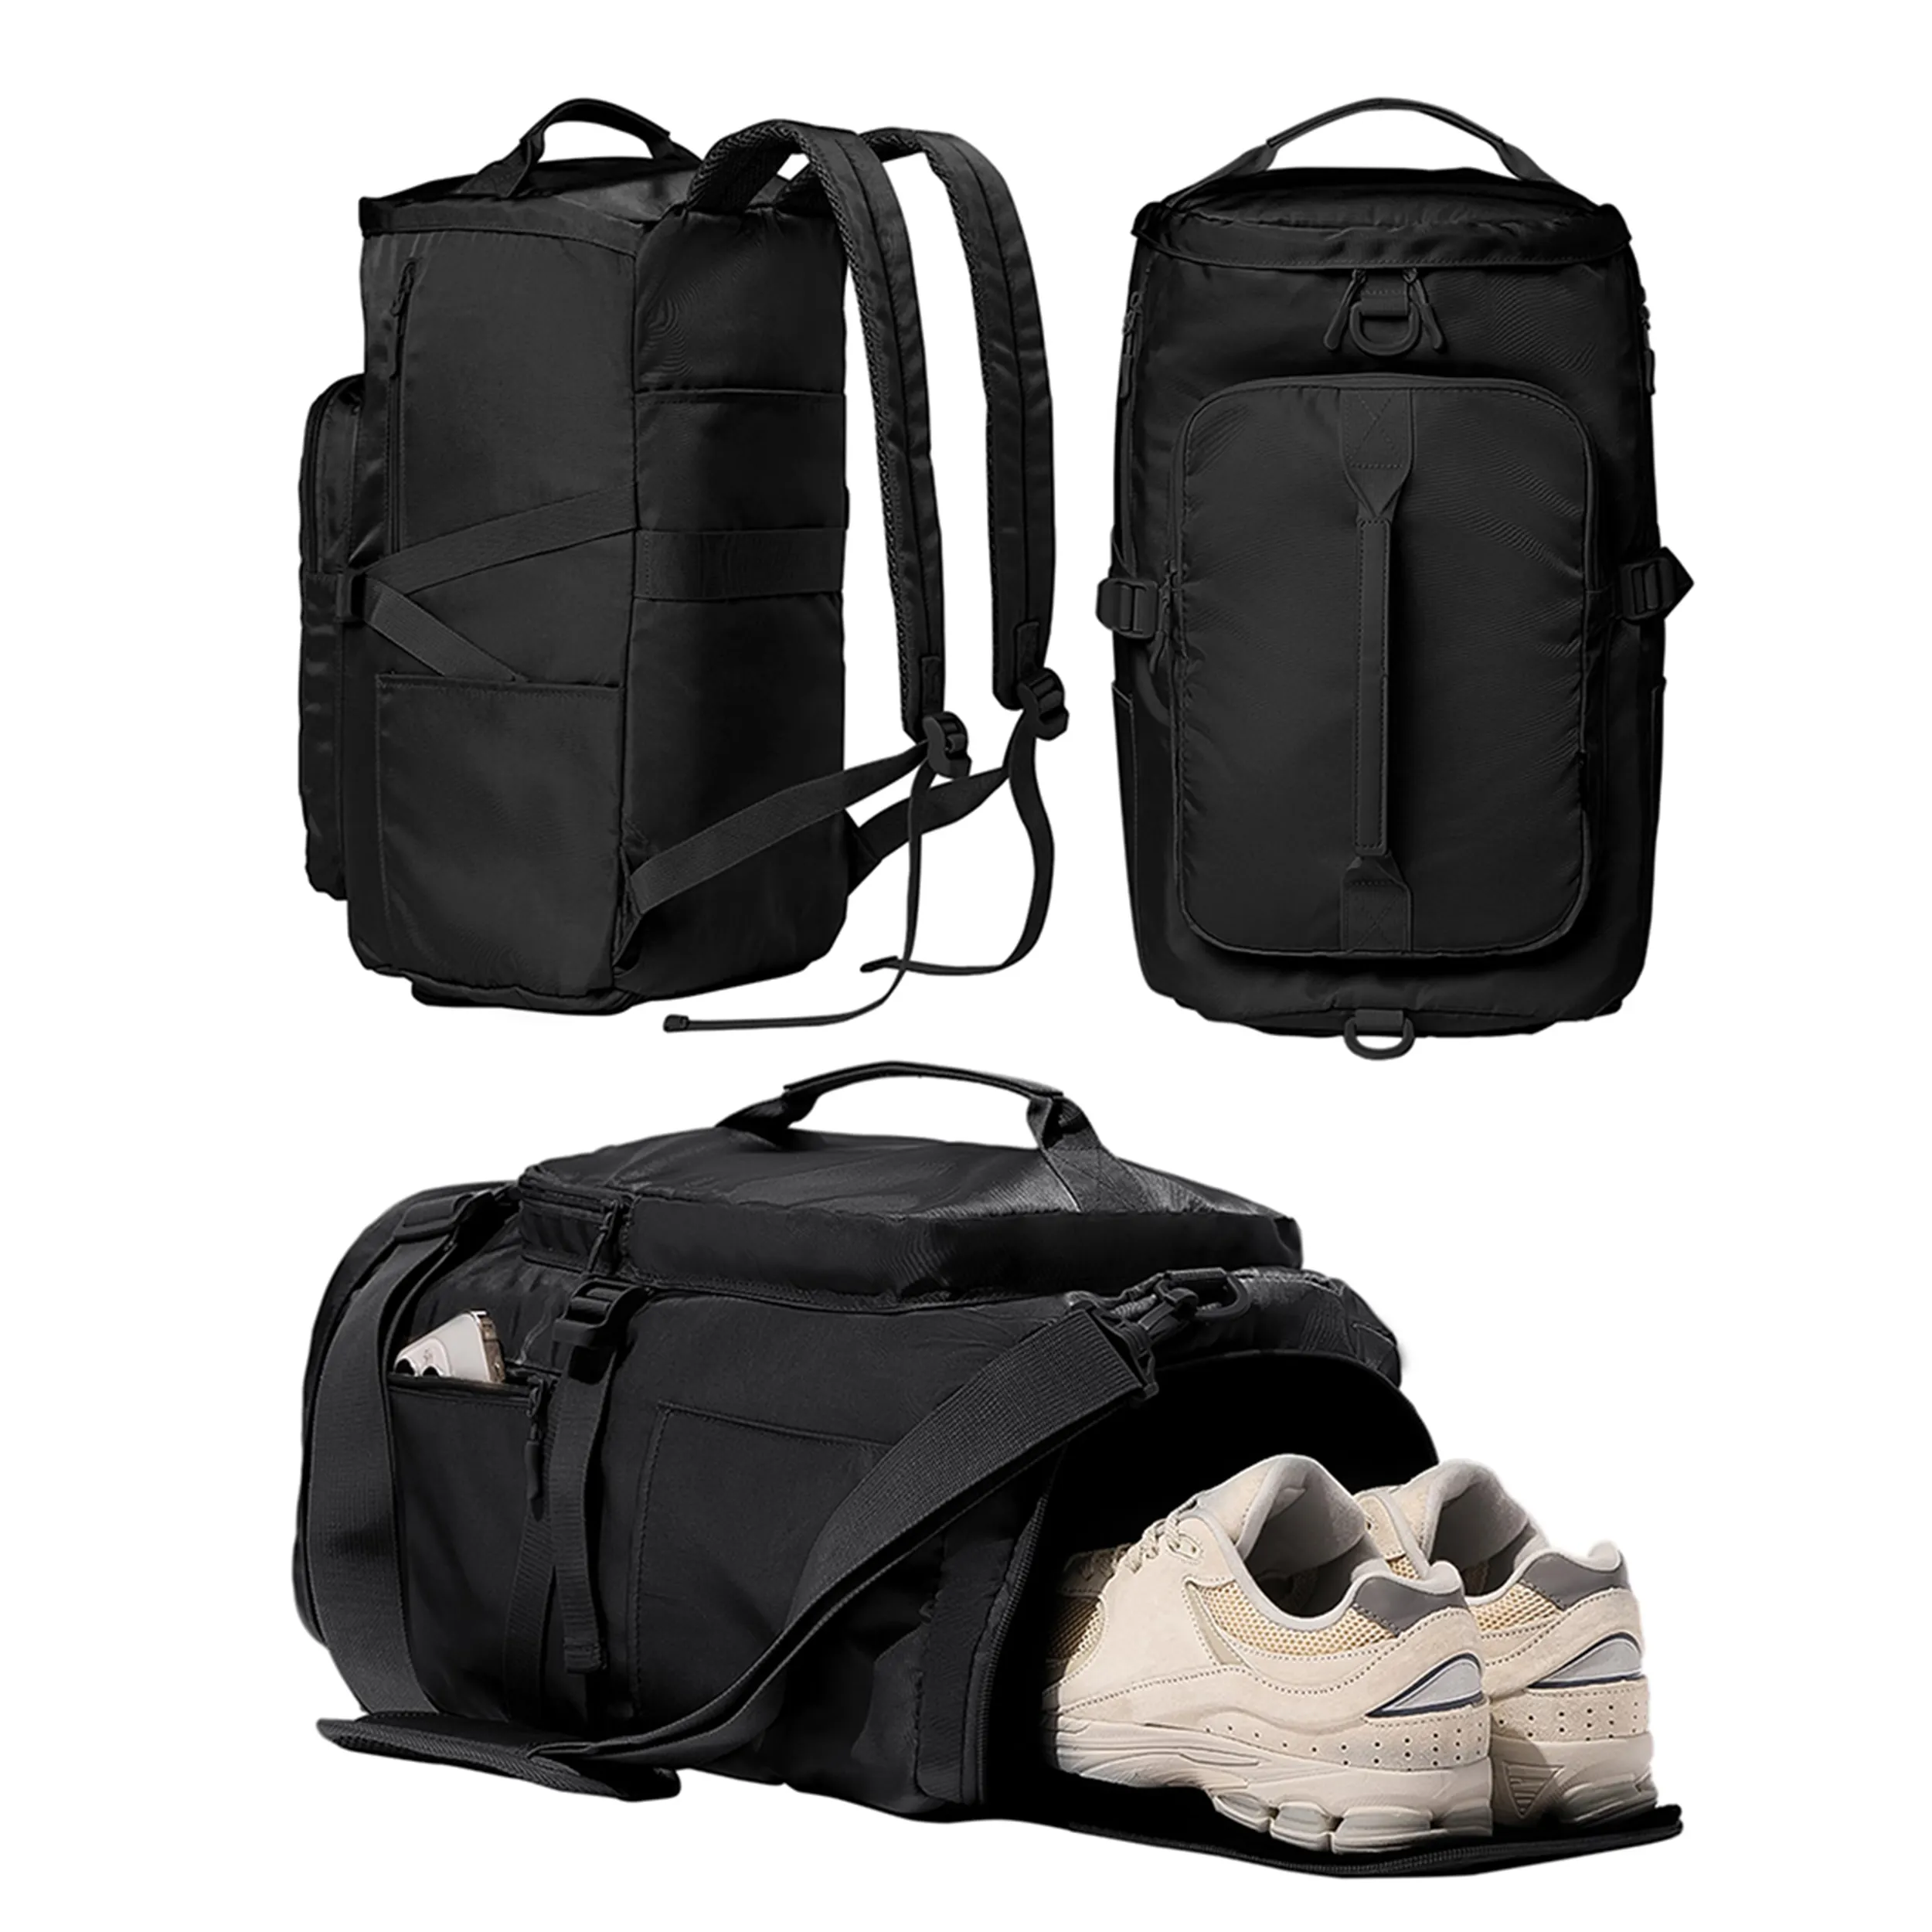 Toptan özel su geçirmez spor salonu silindir çanta büyük kapasiteli hafif sırt çantası spor sırt çantası yürüyüş için uygun